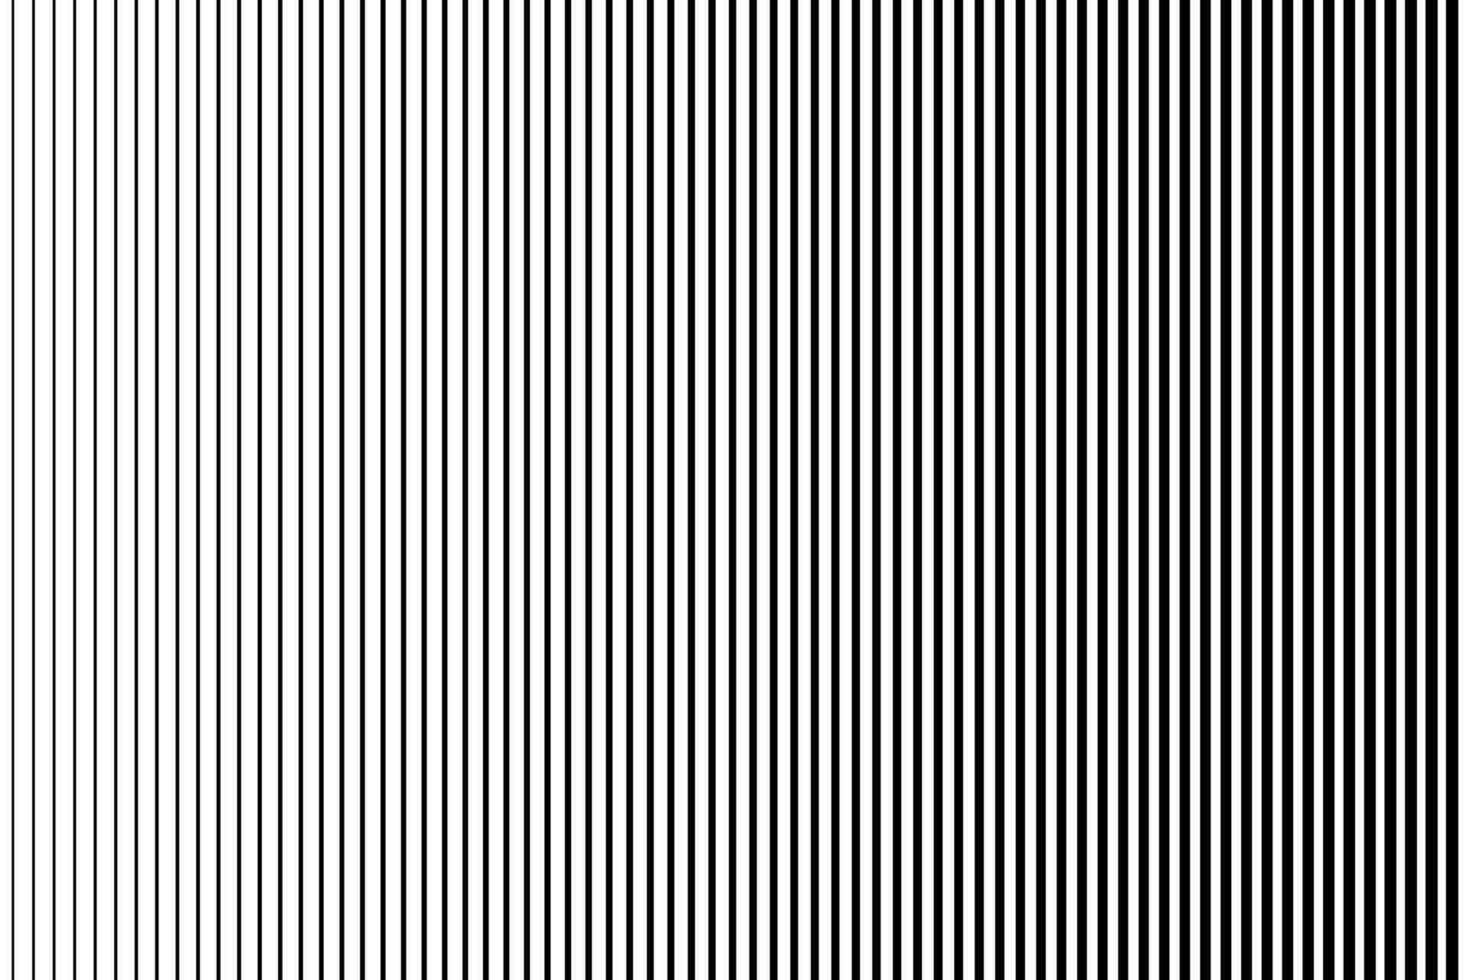 verticaal strepen, parallel Rechtdoor monochroom patroon. halftone helling lijn patroon achtergrond. vector